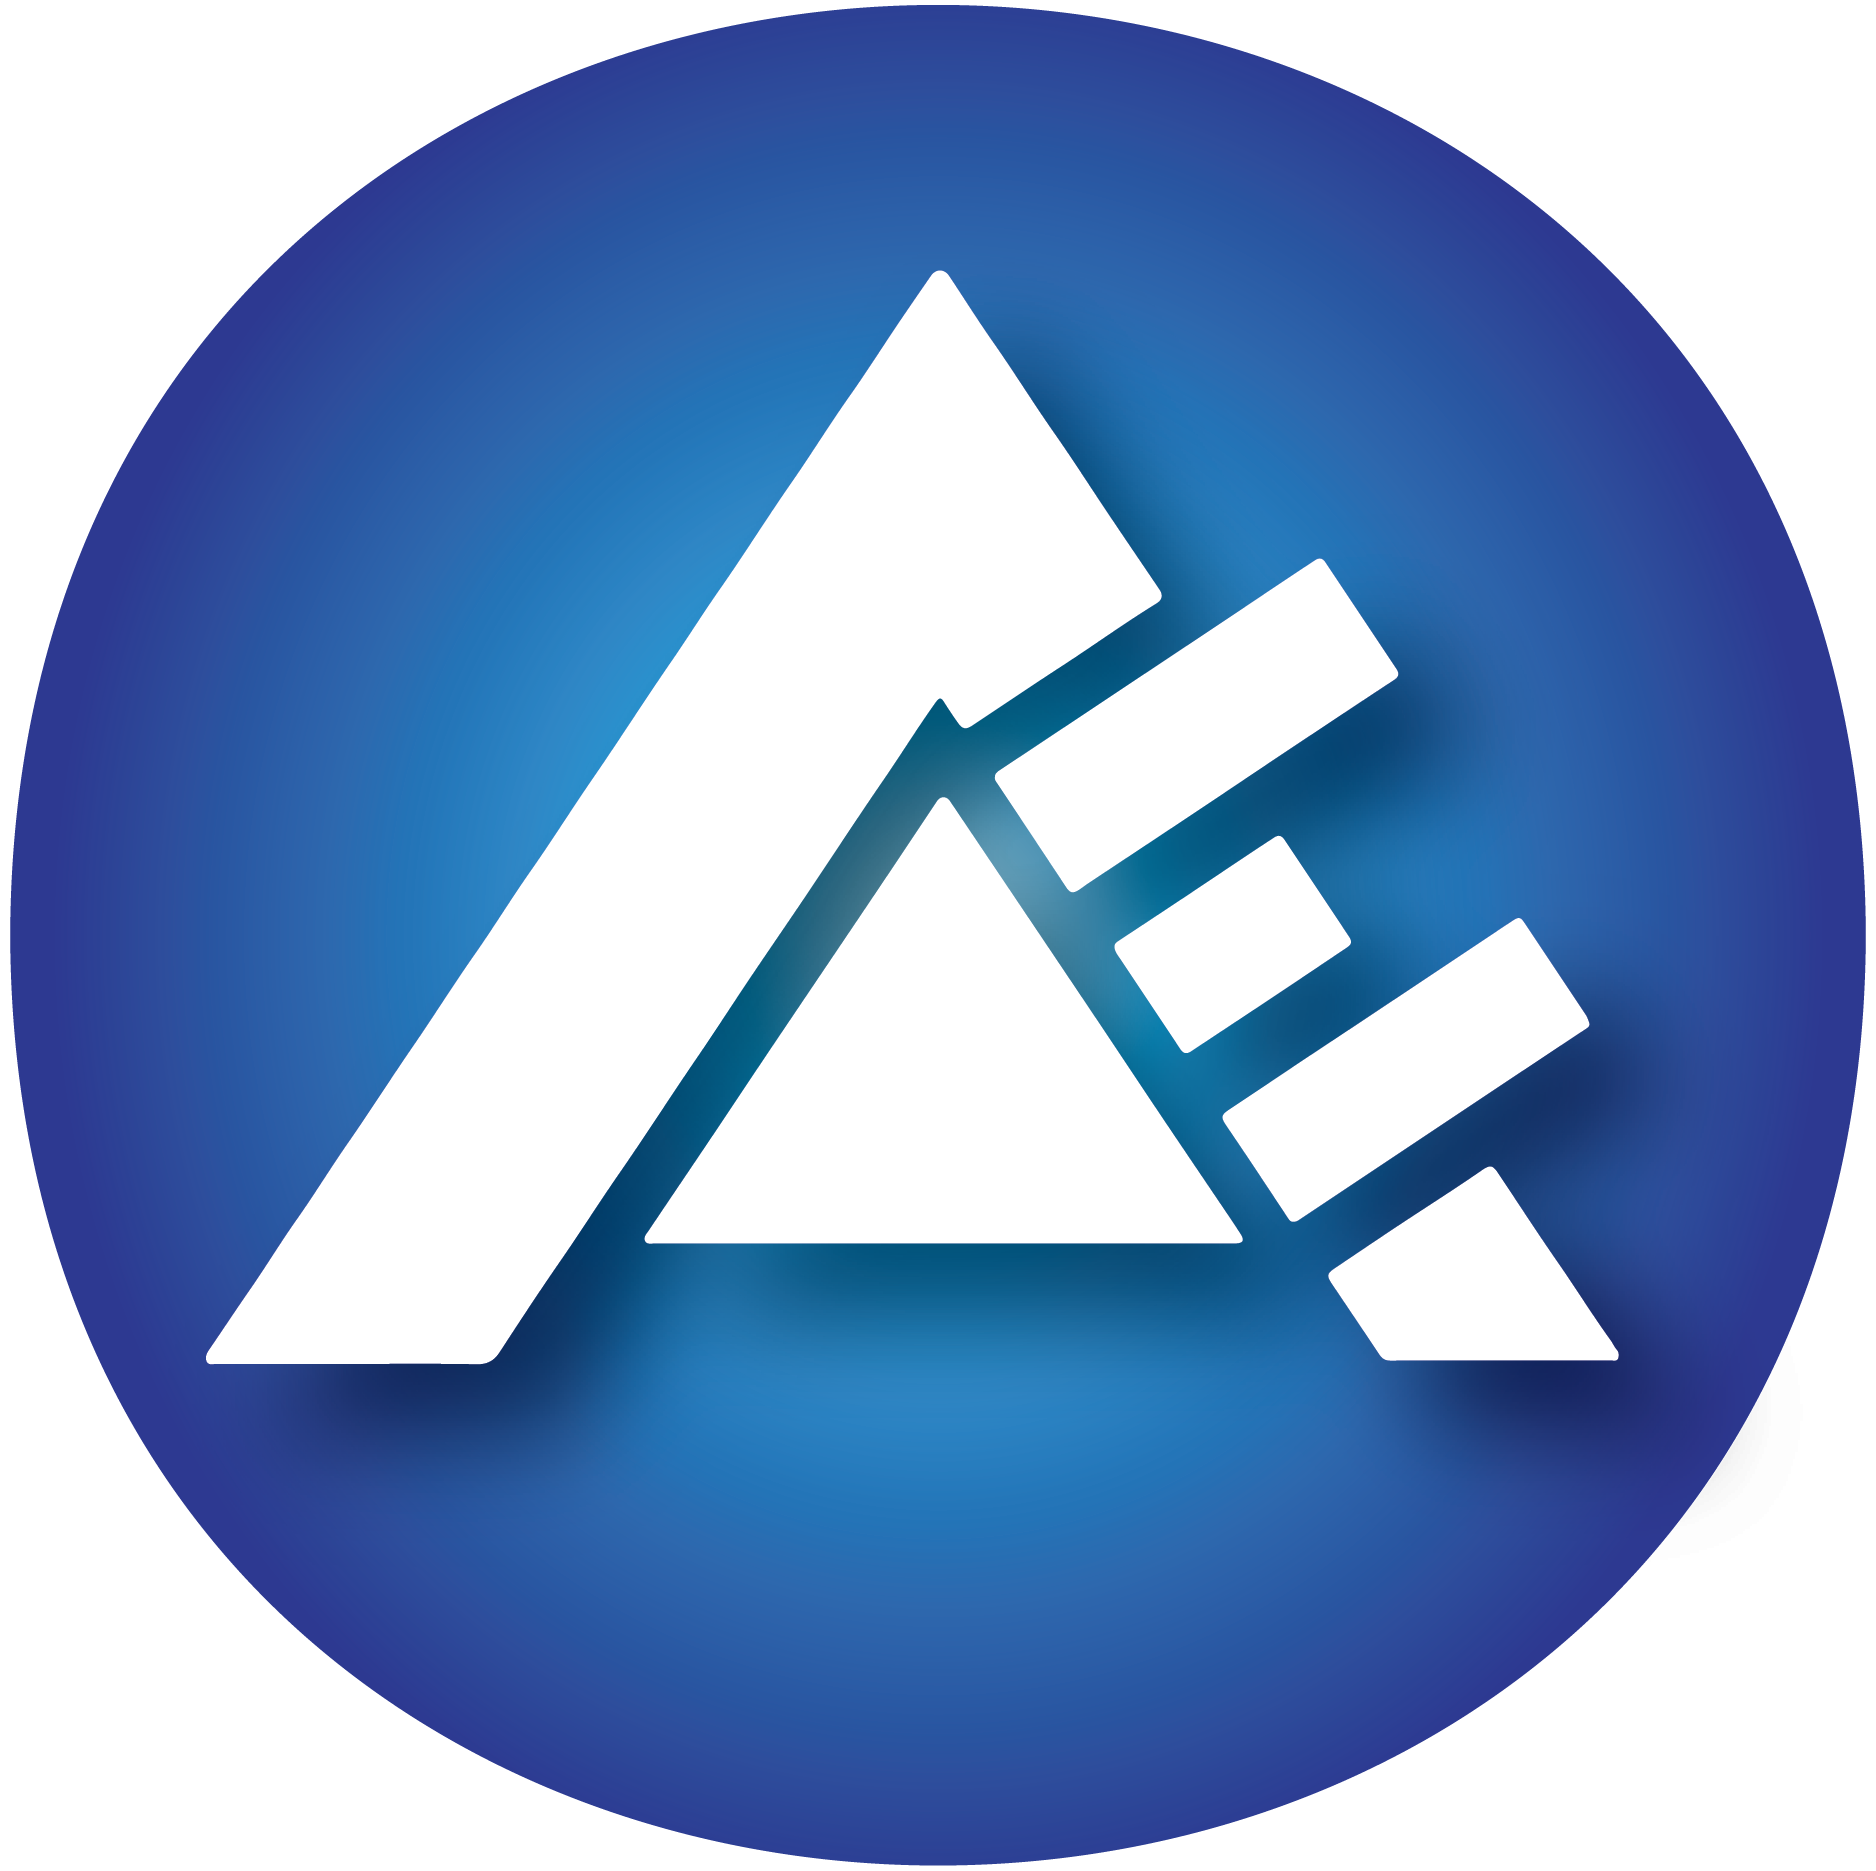 ae global media logo